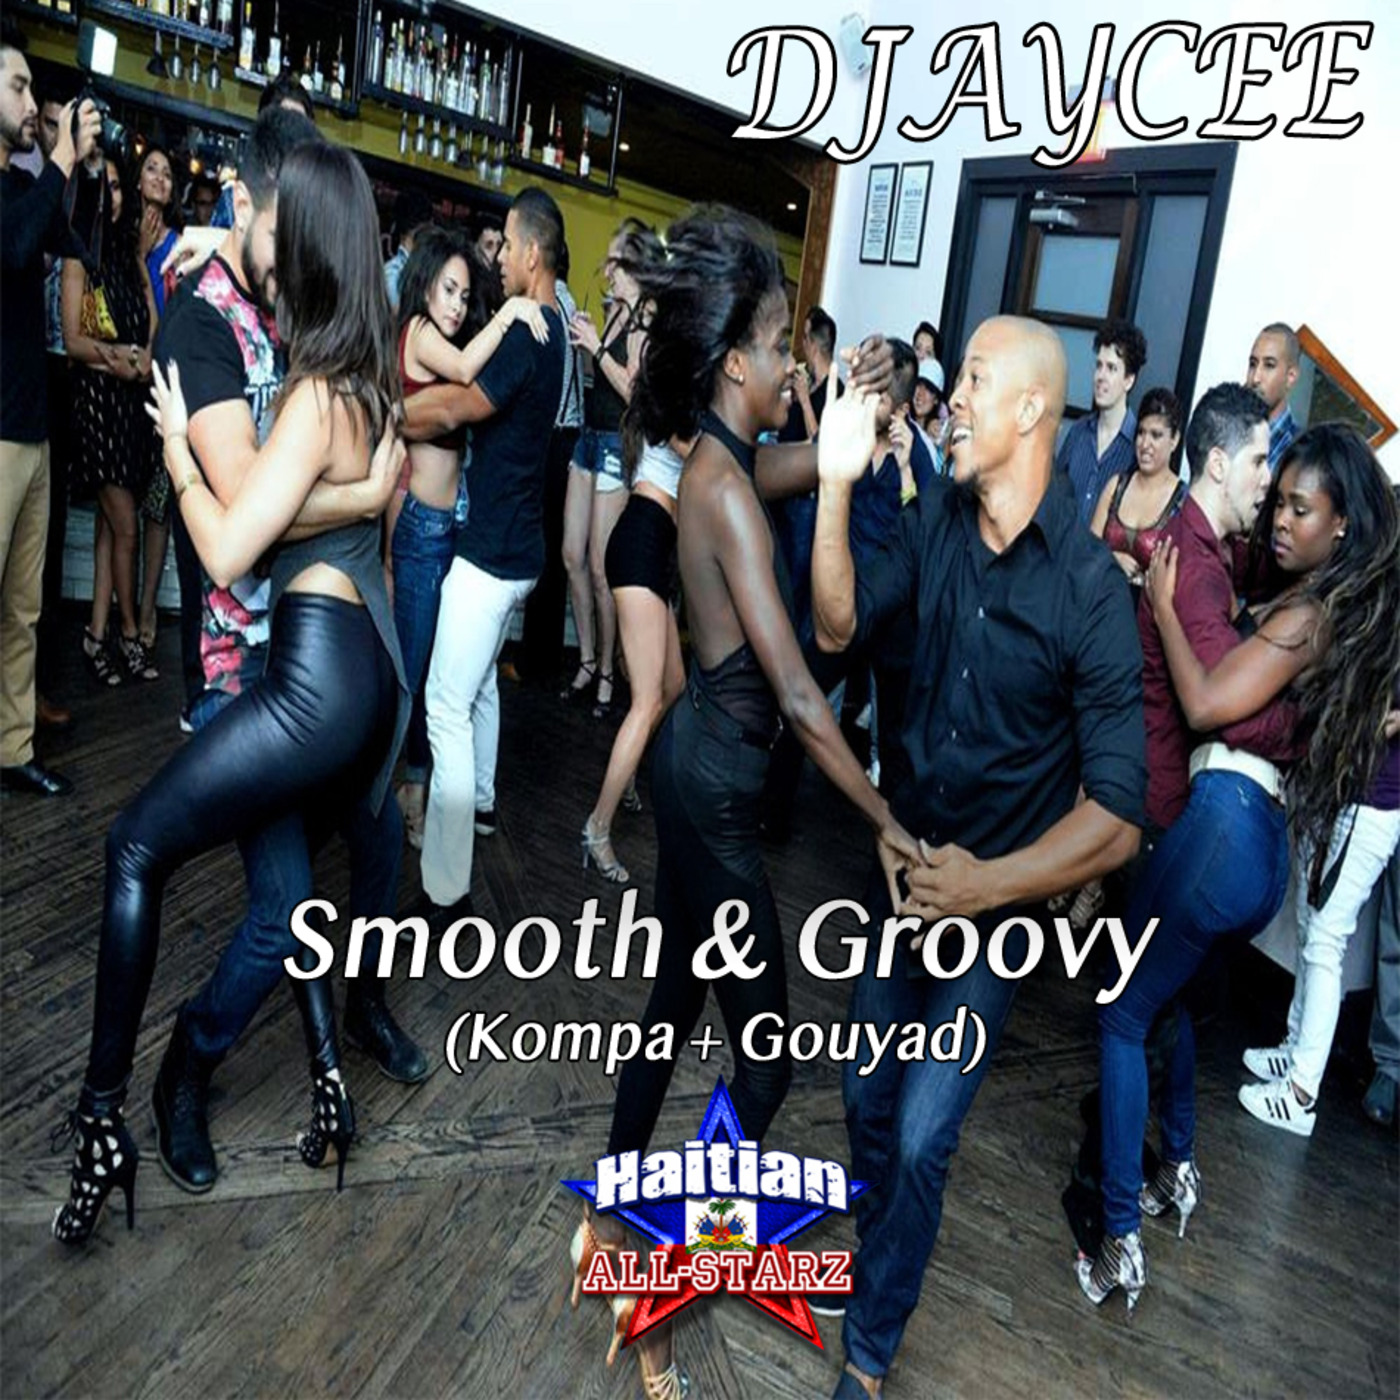 Smooth & Groovy (Kompa + Gouyad) - DJayCee